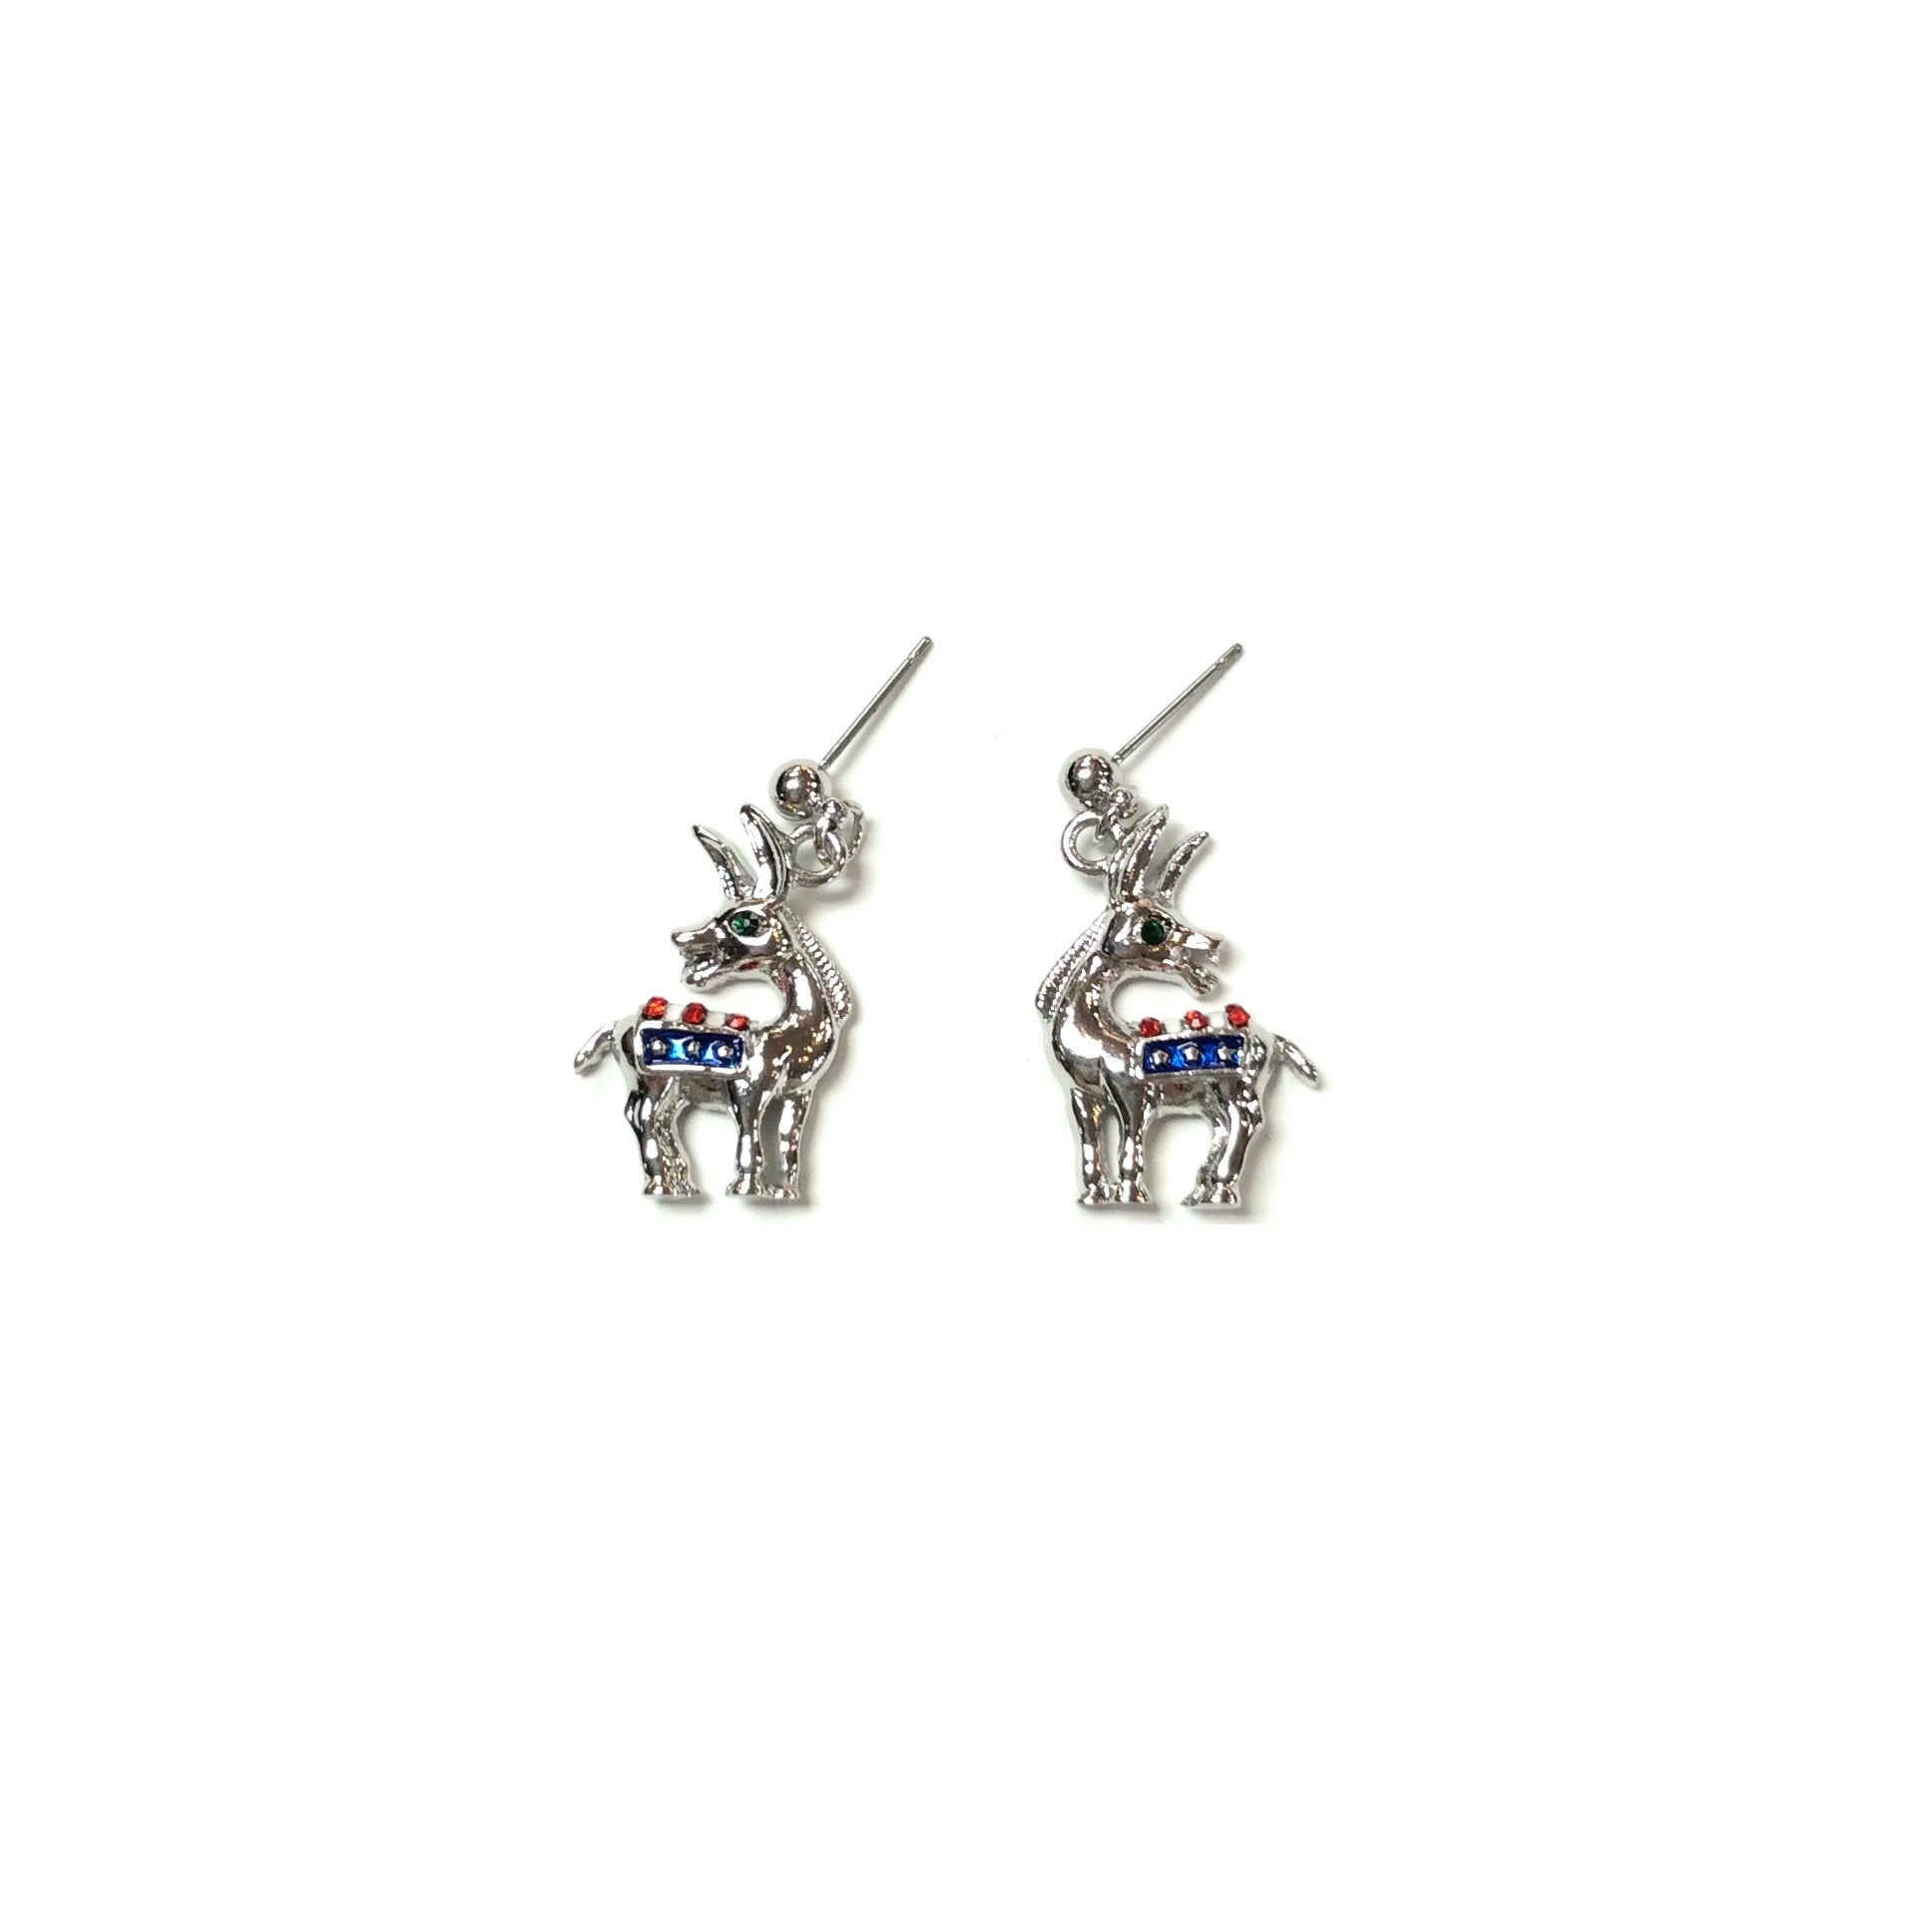 Democrat Donkey Earrings #19-141279